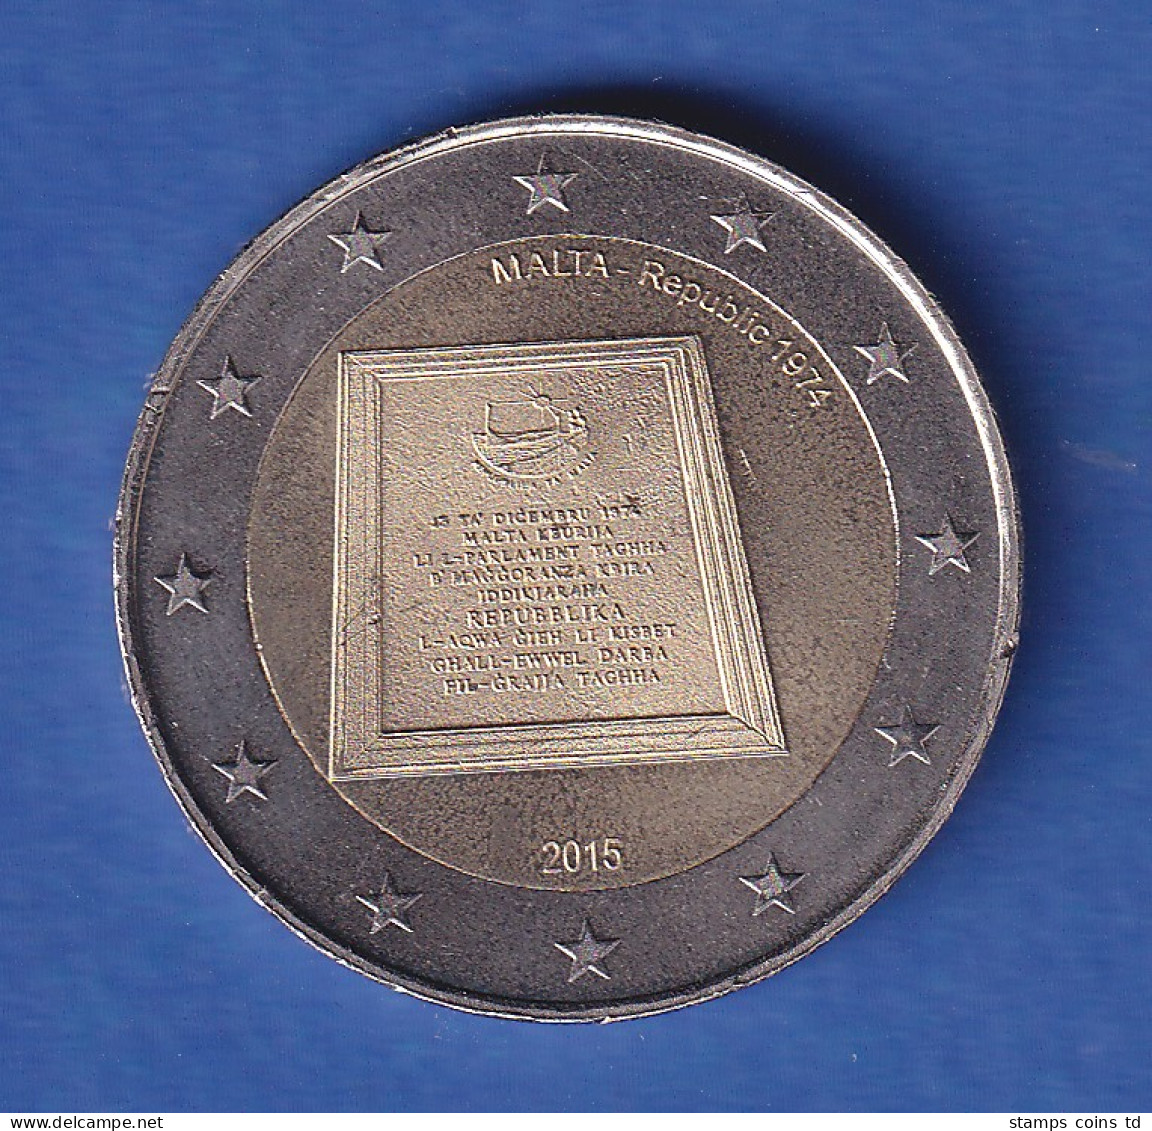 Malta 2015 2-Euro-Sondermünze Gedenktafel Bankfr. Unzirk.  - Malte